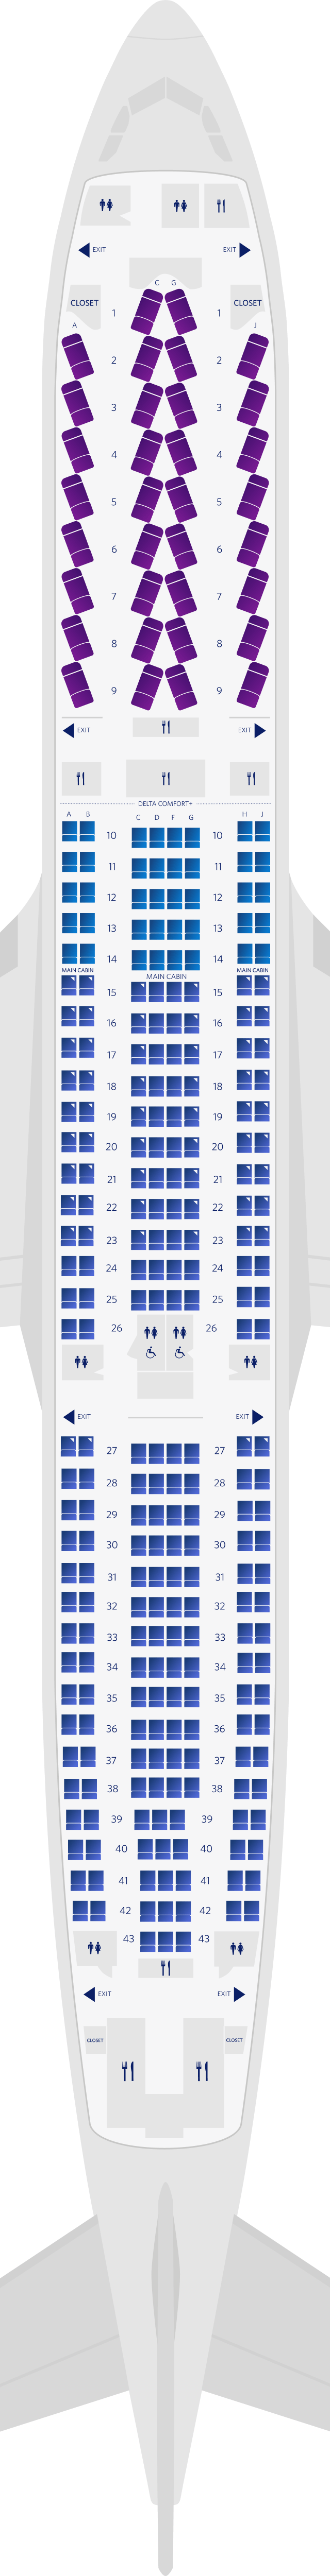 Airbus A300-300 3-Kabinen Sitzplatzübersicht (333)